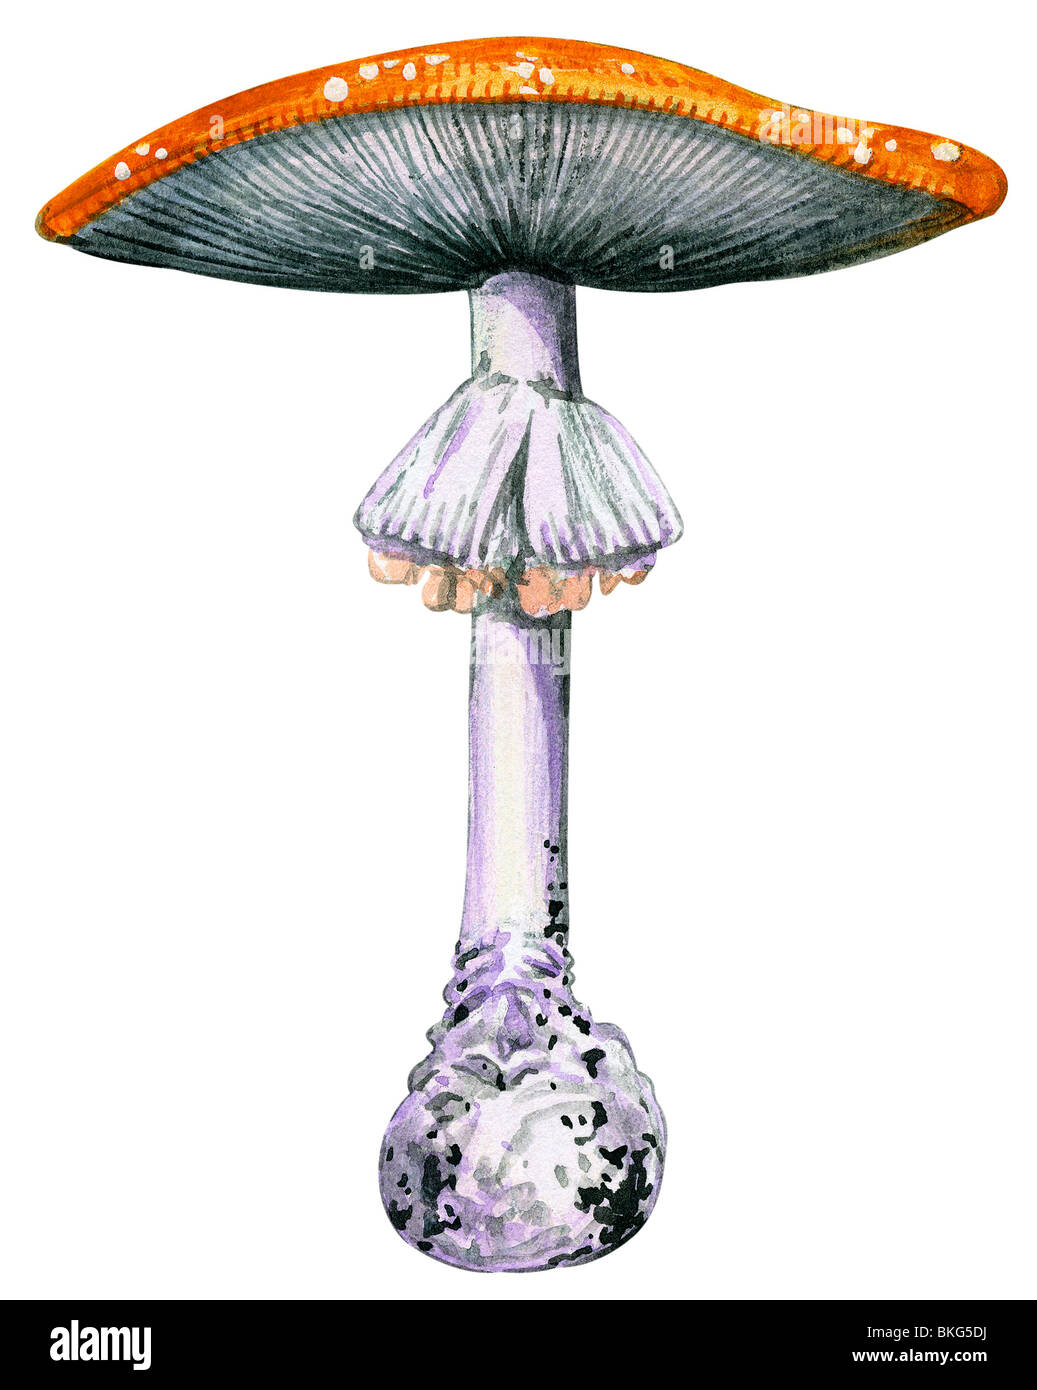 Fly mushroom Stock Photo